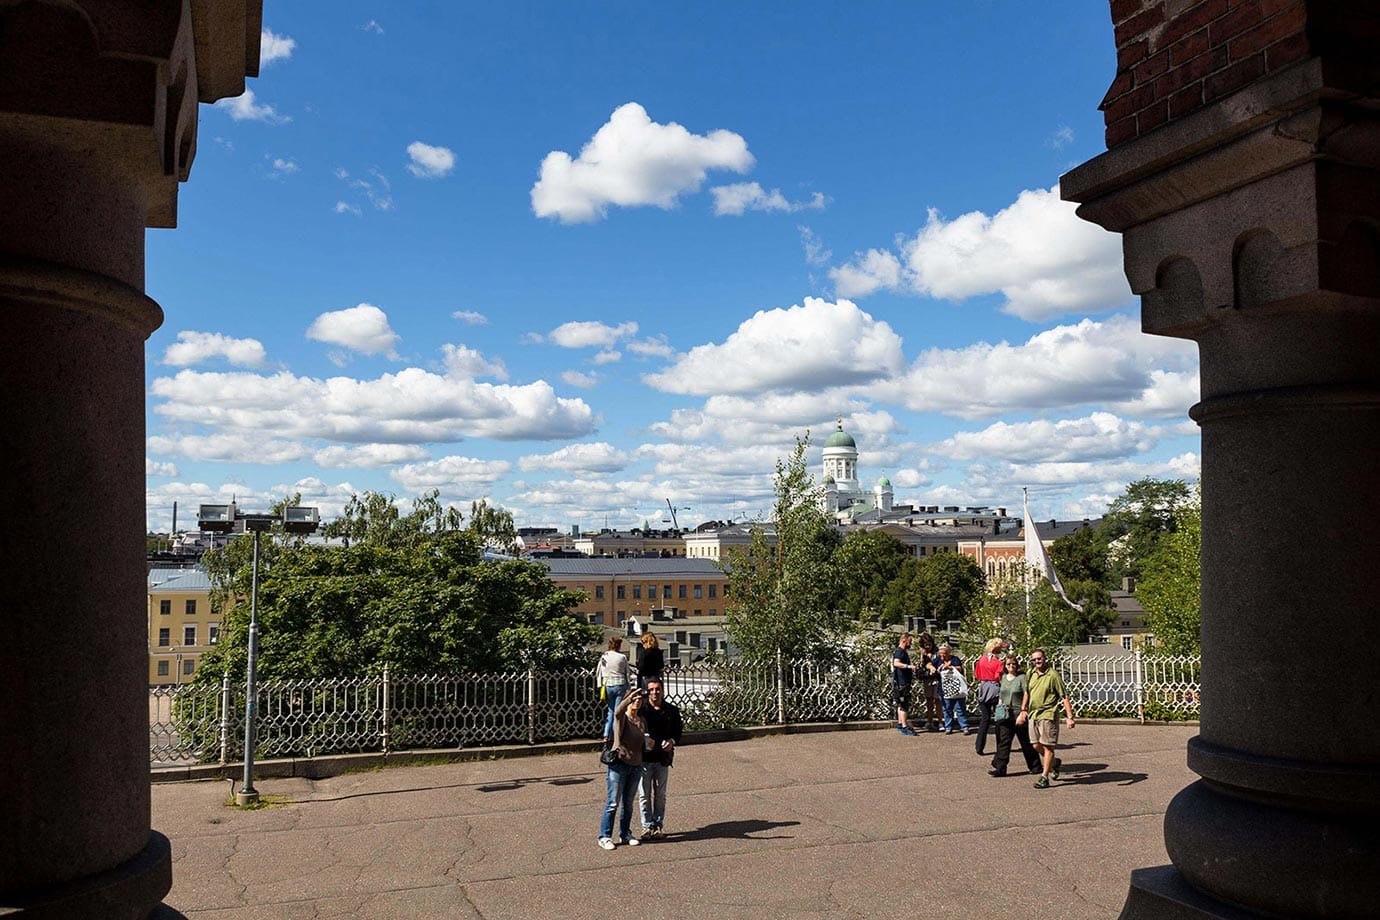 View of Helsinki